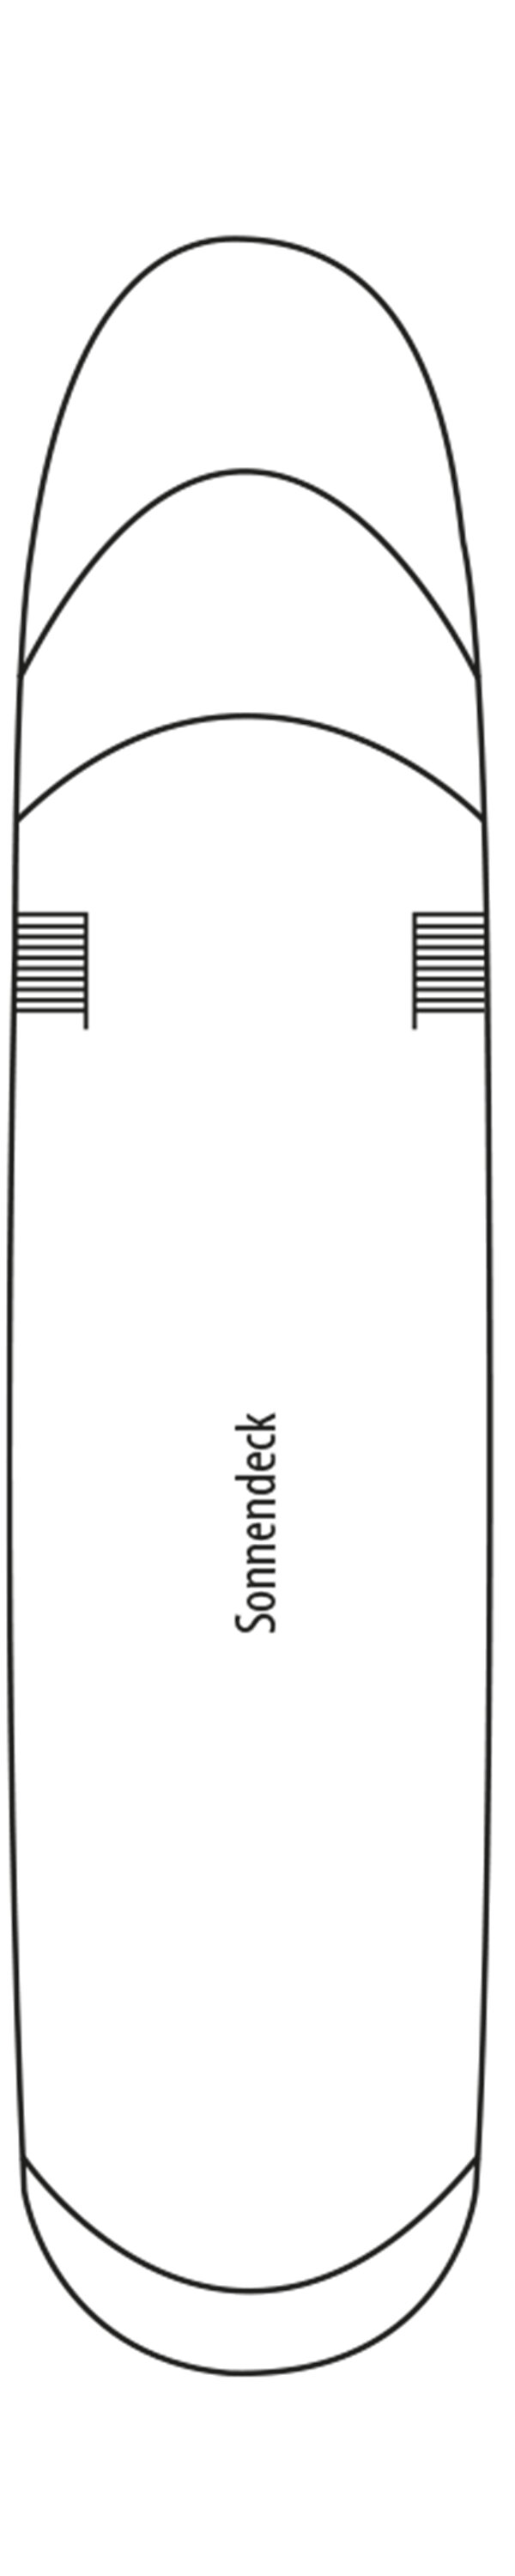 Sonnendeck (Deck Nr. 4)